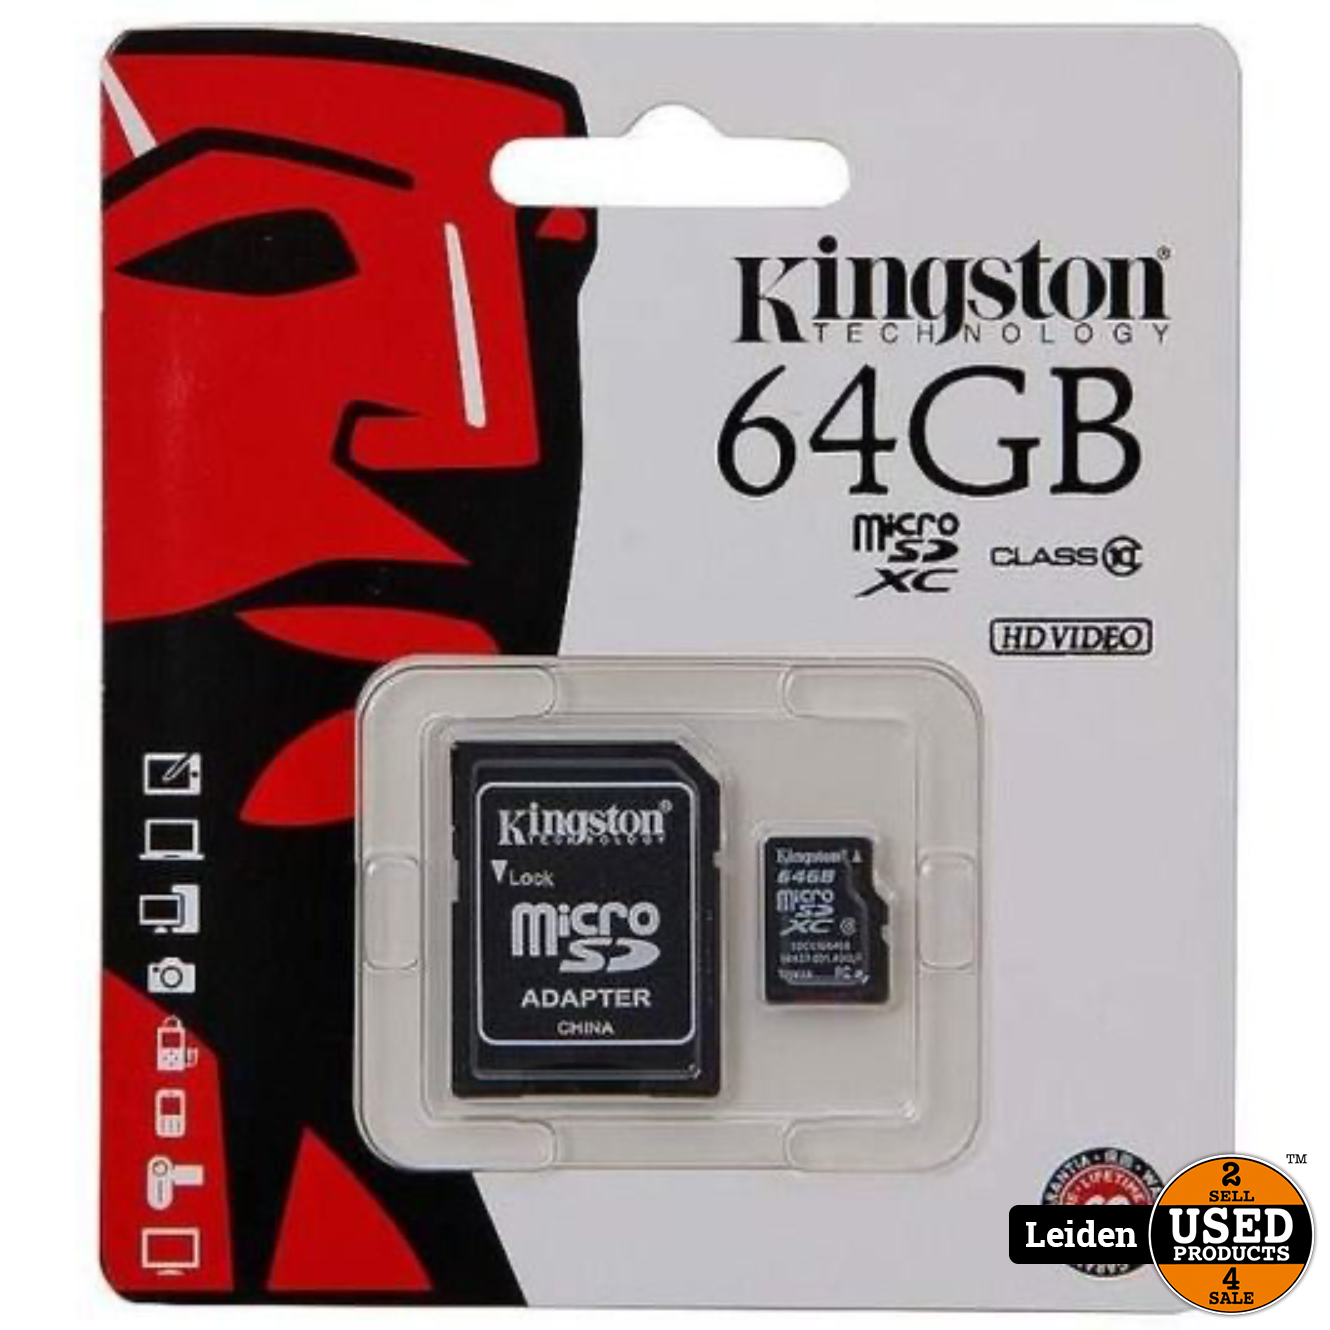 talent naakt Sleutel Kingston Micro SD Kaart 64GB met SD Adapter - Zwart - Used Products Leiden